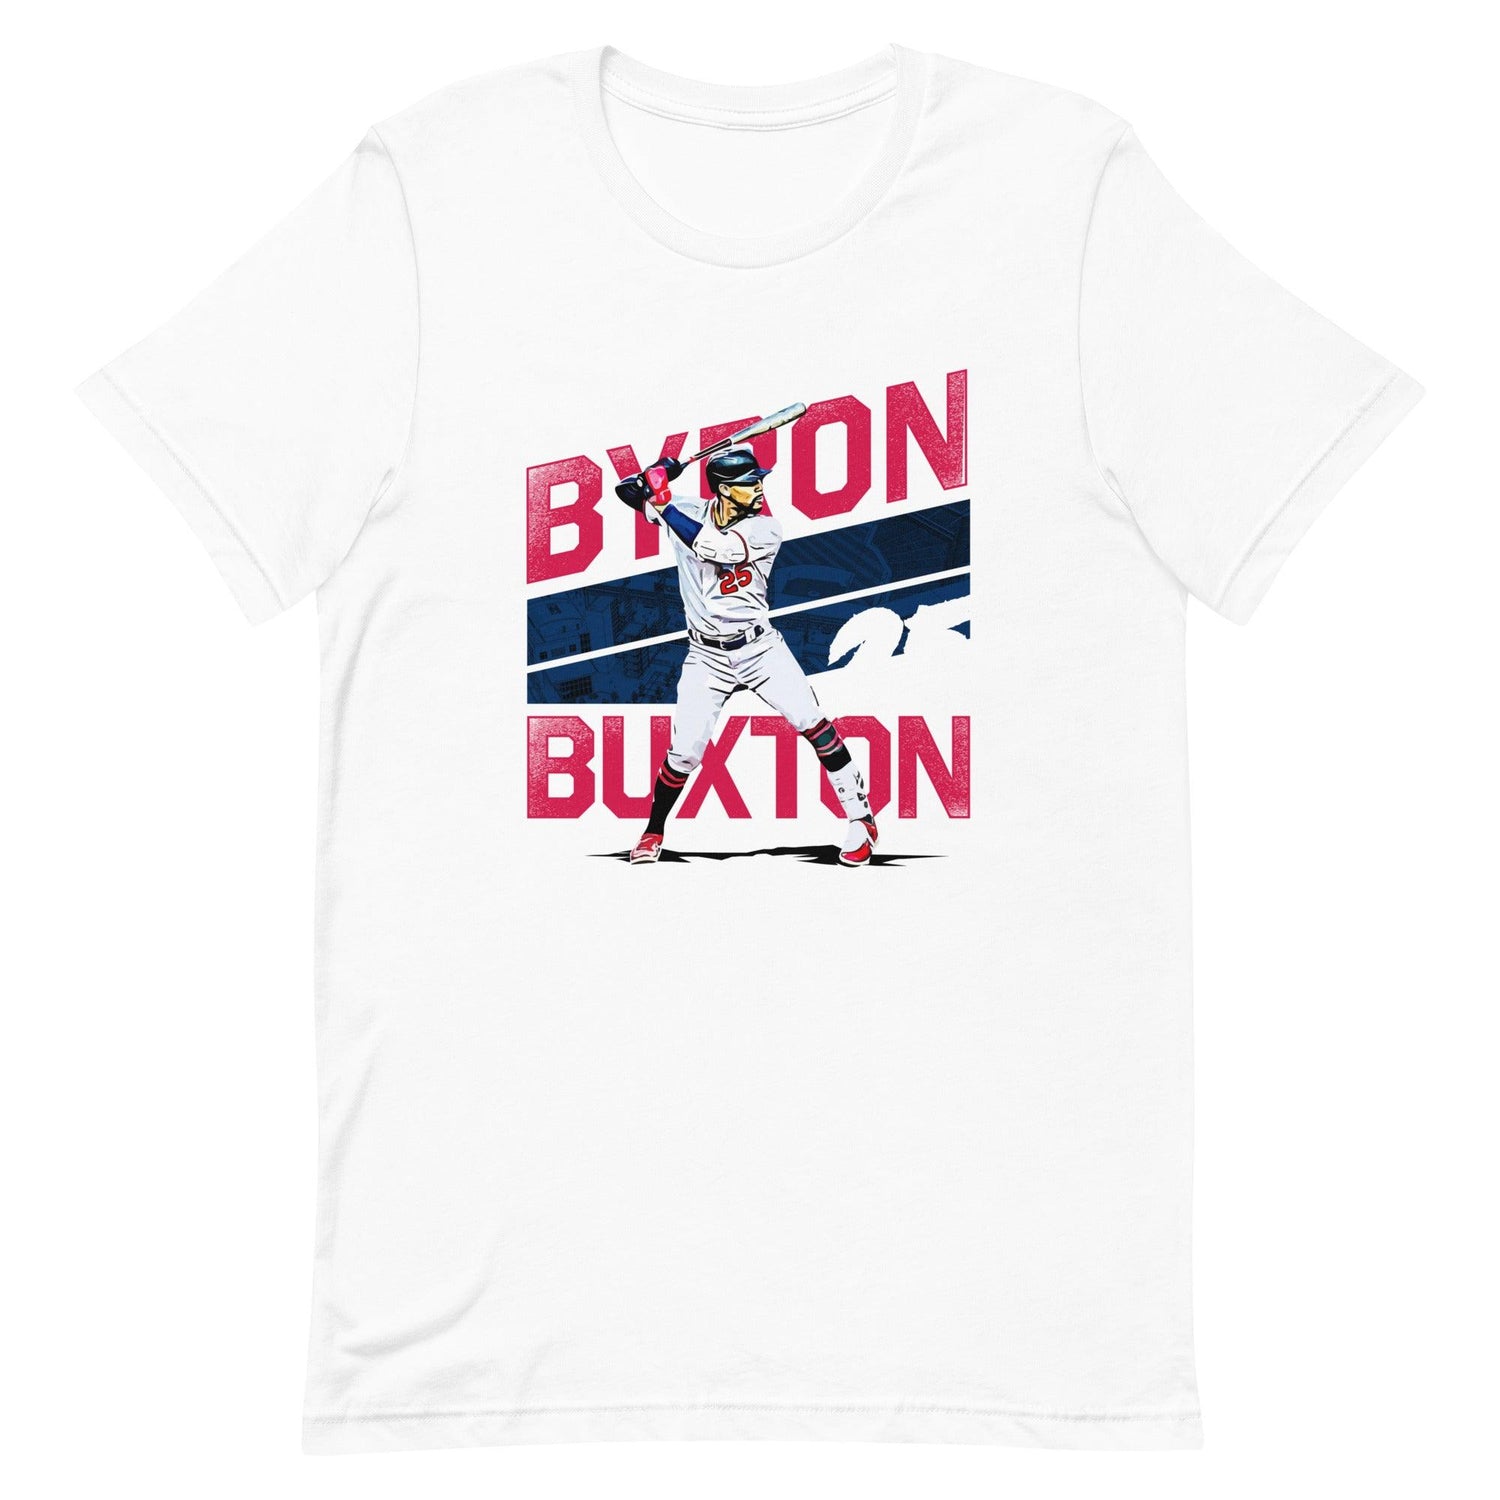 Byron Buxton "25" t-shirt - Fan Arch